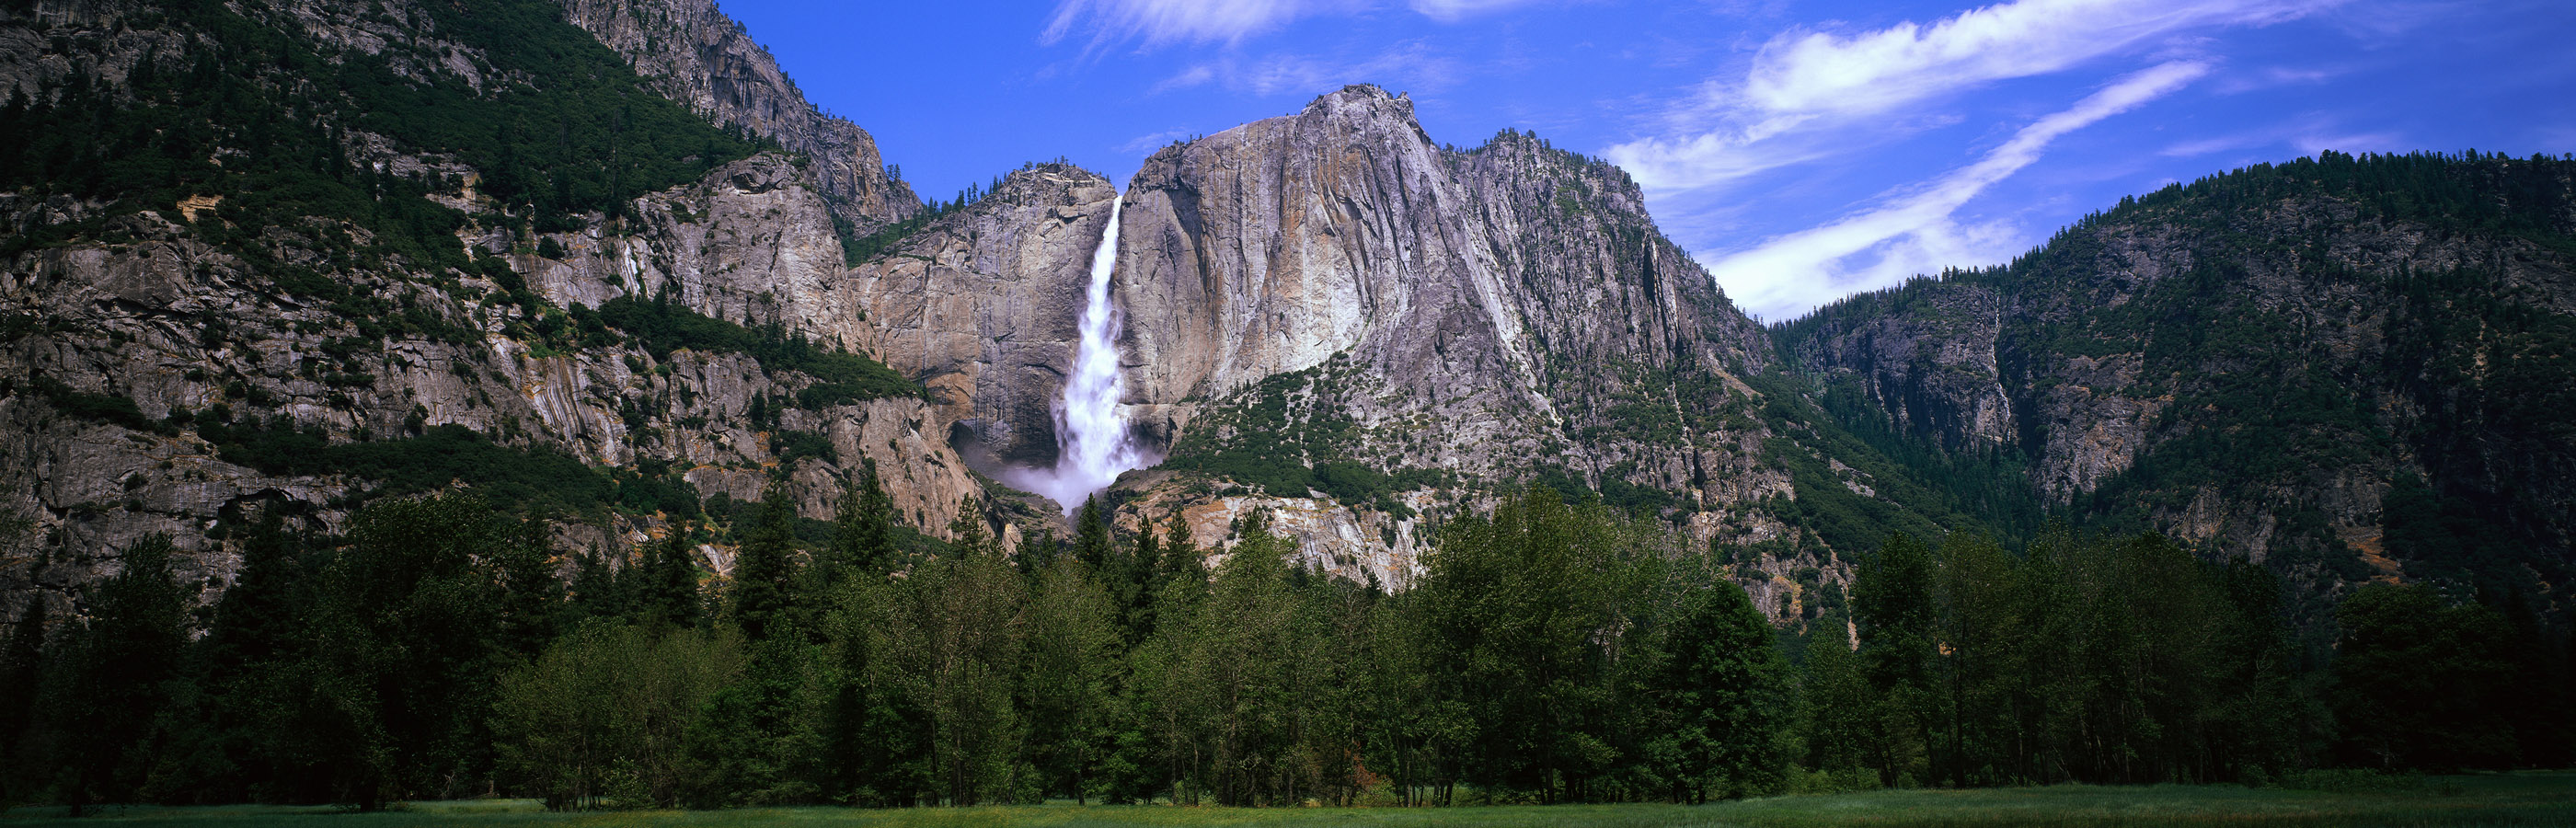 High Resolution Panoramic Wallpaper - Yosemite National Park, Yosemite Falls - HD Wallpaper 